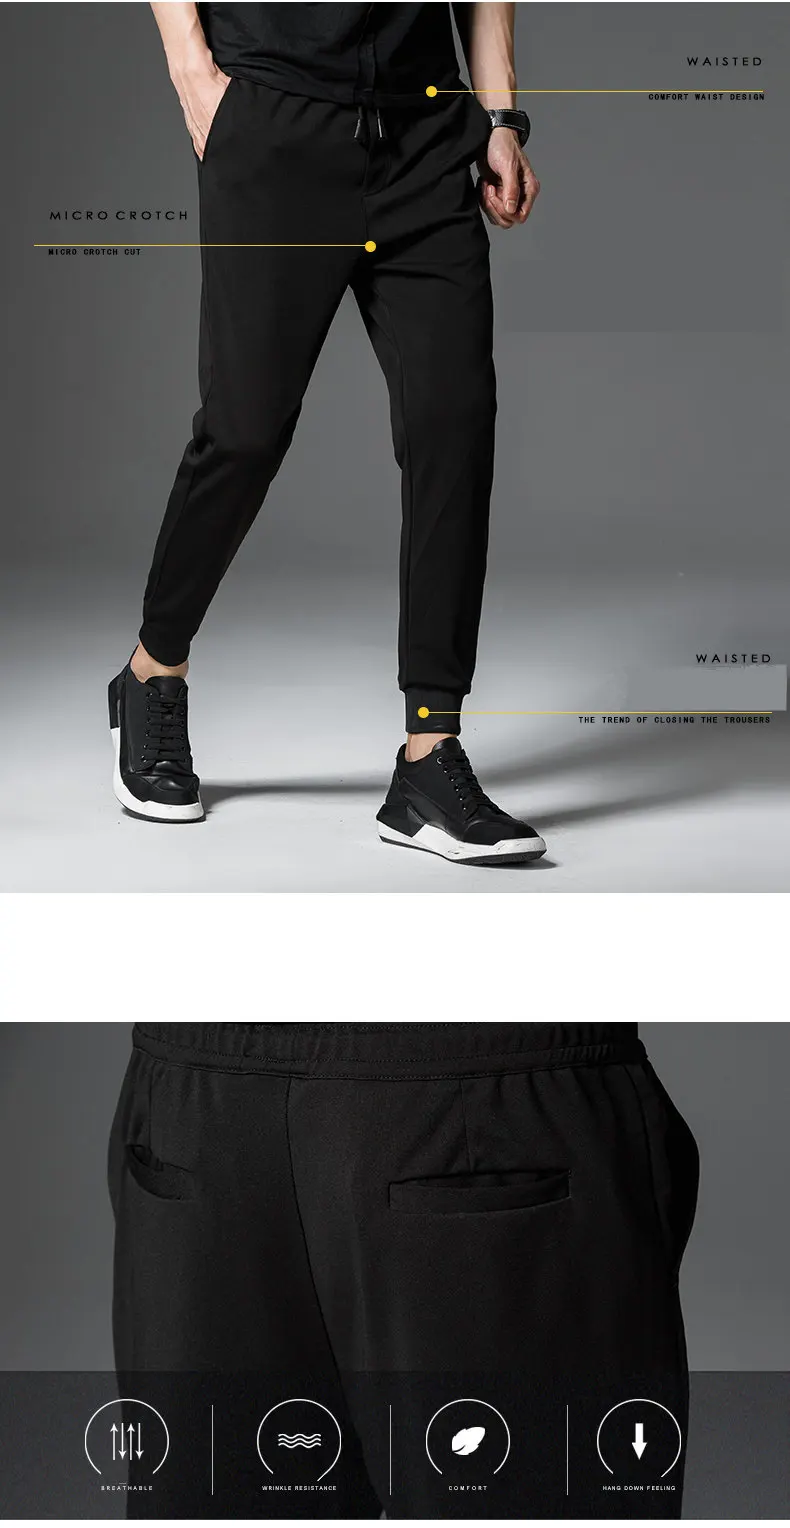 MRMT Высокое качество Мужские брюки для отдыха шаровары мужские брюки свободные ноги брюки для мужчин брендовая одежда мужские брюки спортивные джоггеры